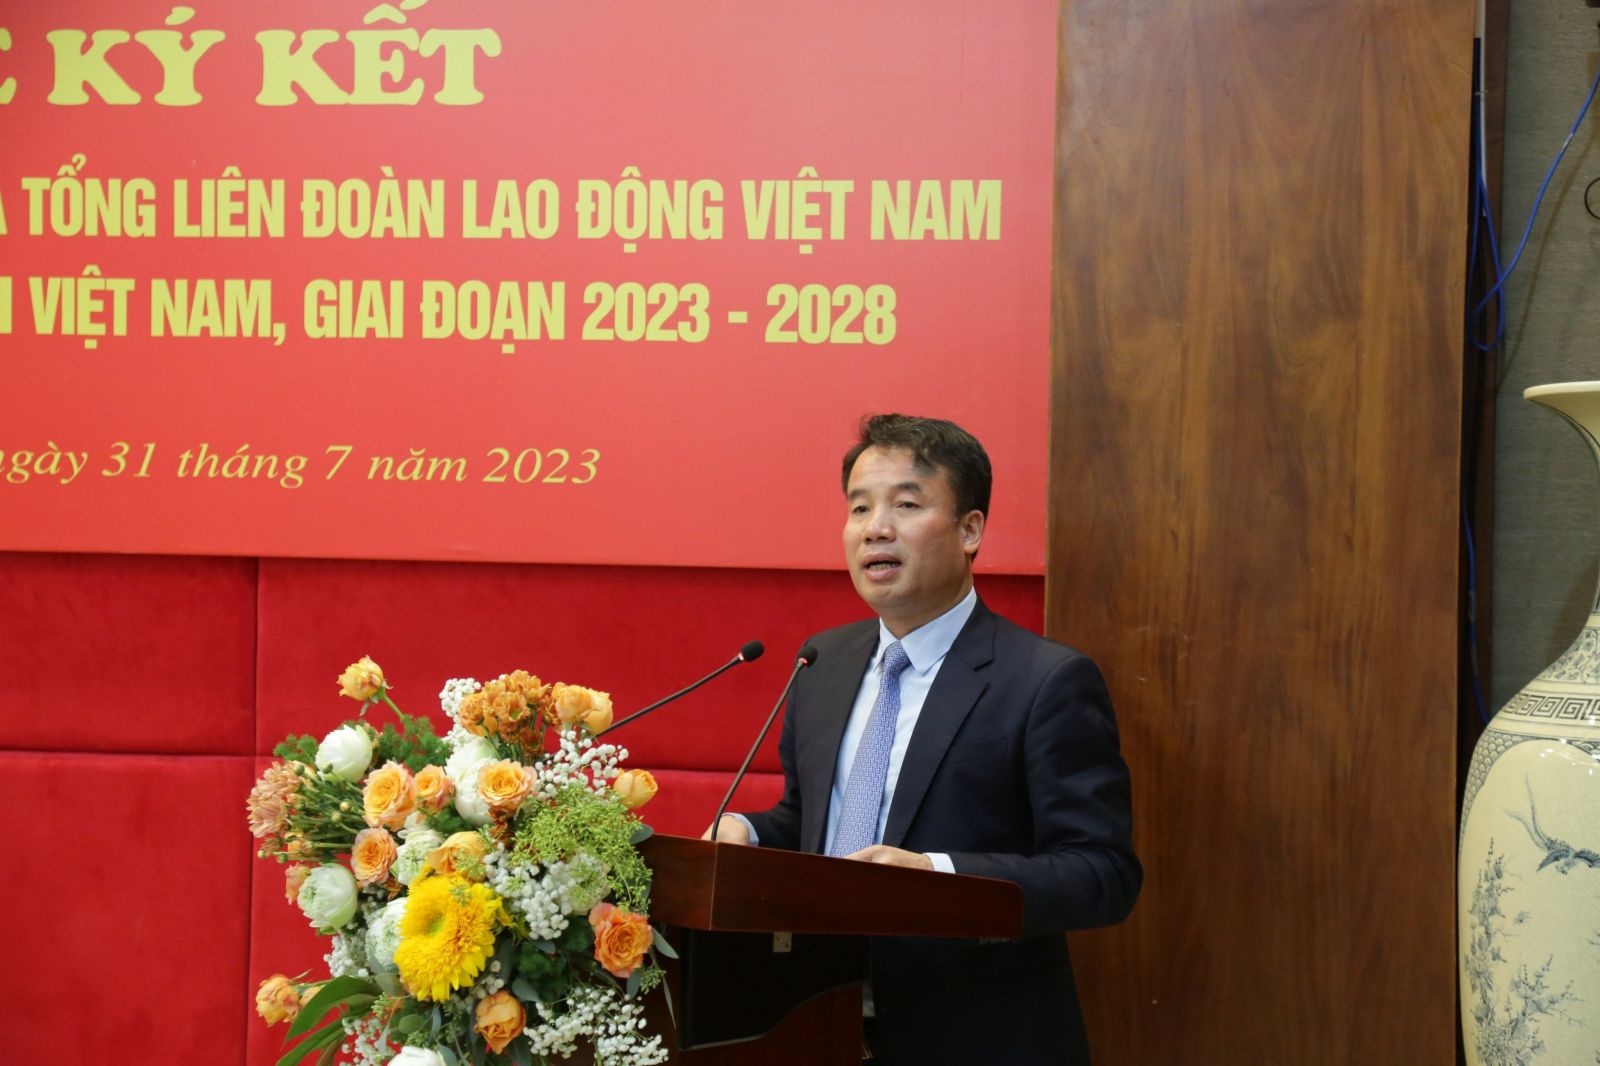 Tổng Giám đốc BHXH Việt Nam Nguyễn Thế Mạnh phát biểu tại buổi lễ